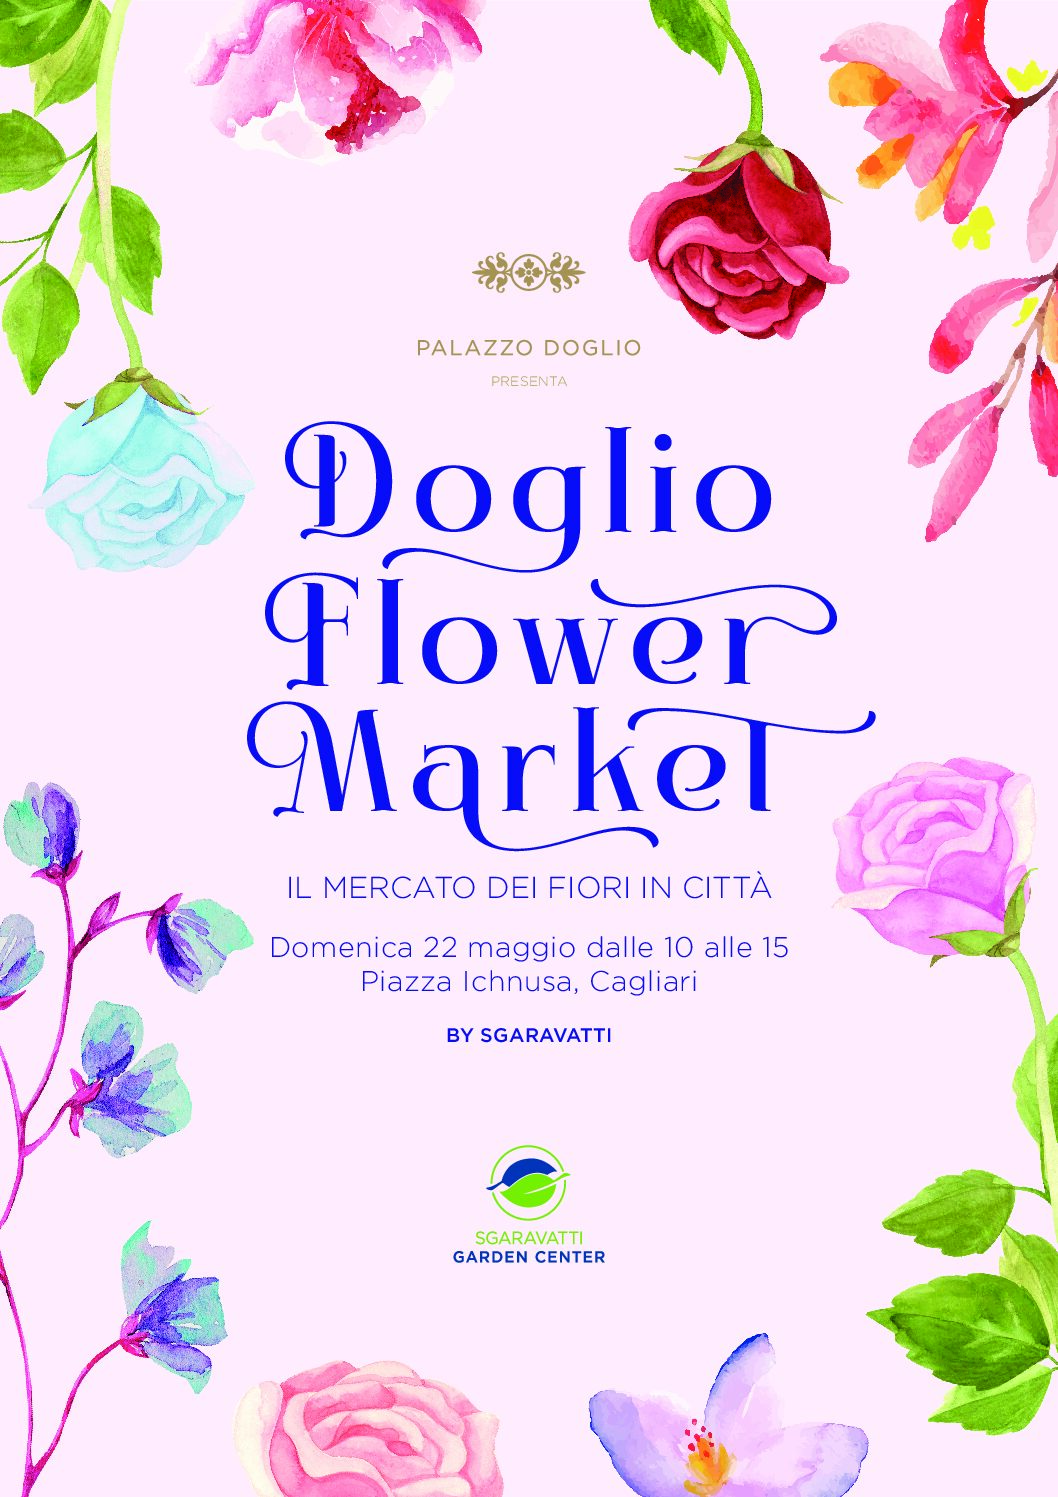 Doglio Flower Market organizzato da Sgaravatti